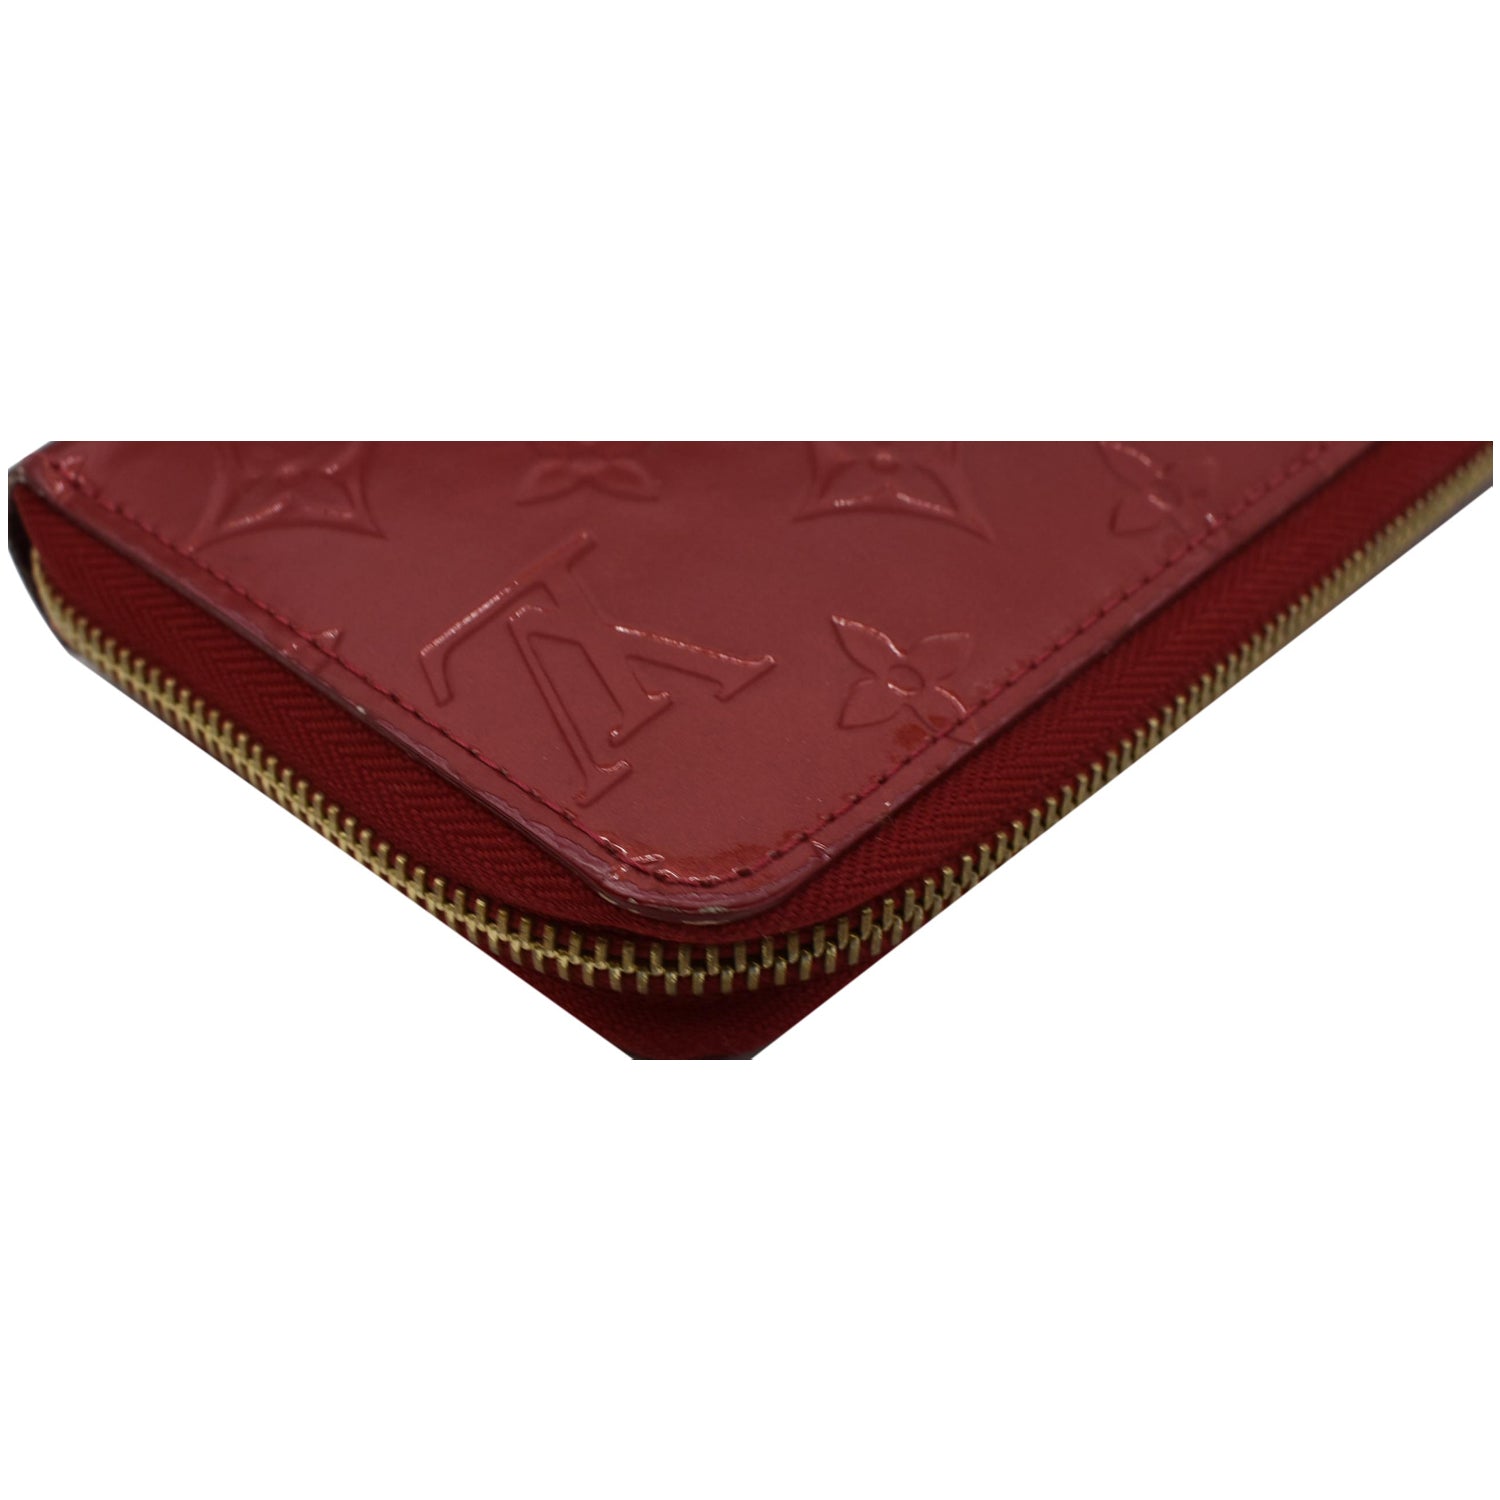 Louis Vuitton Rouge Fauviste Vernis Zippy Wallet, myGemma